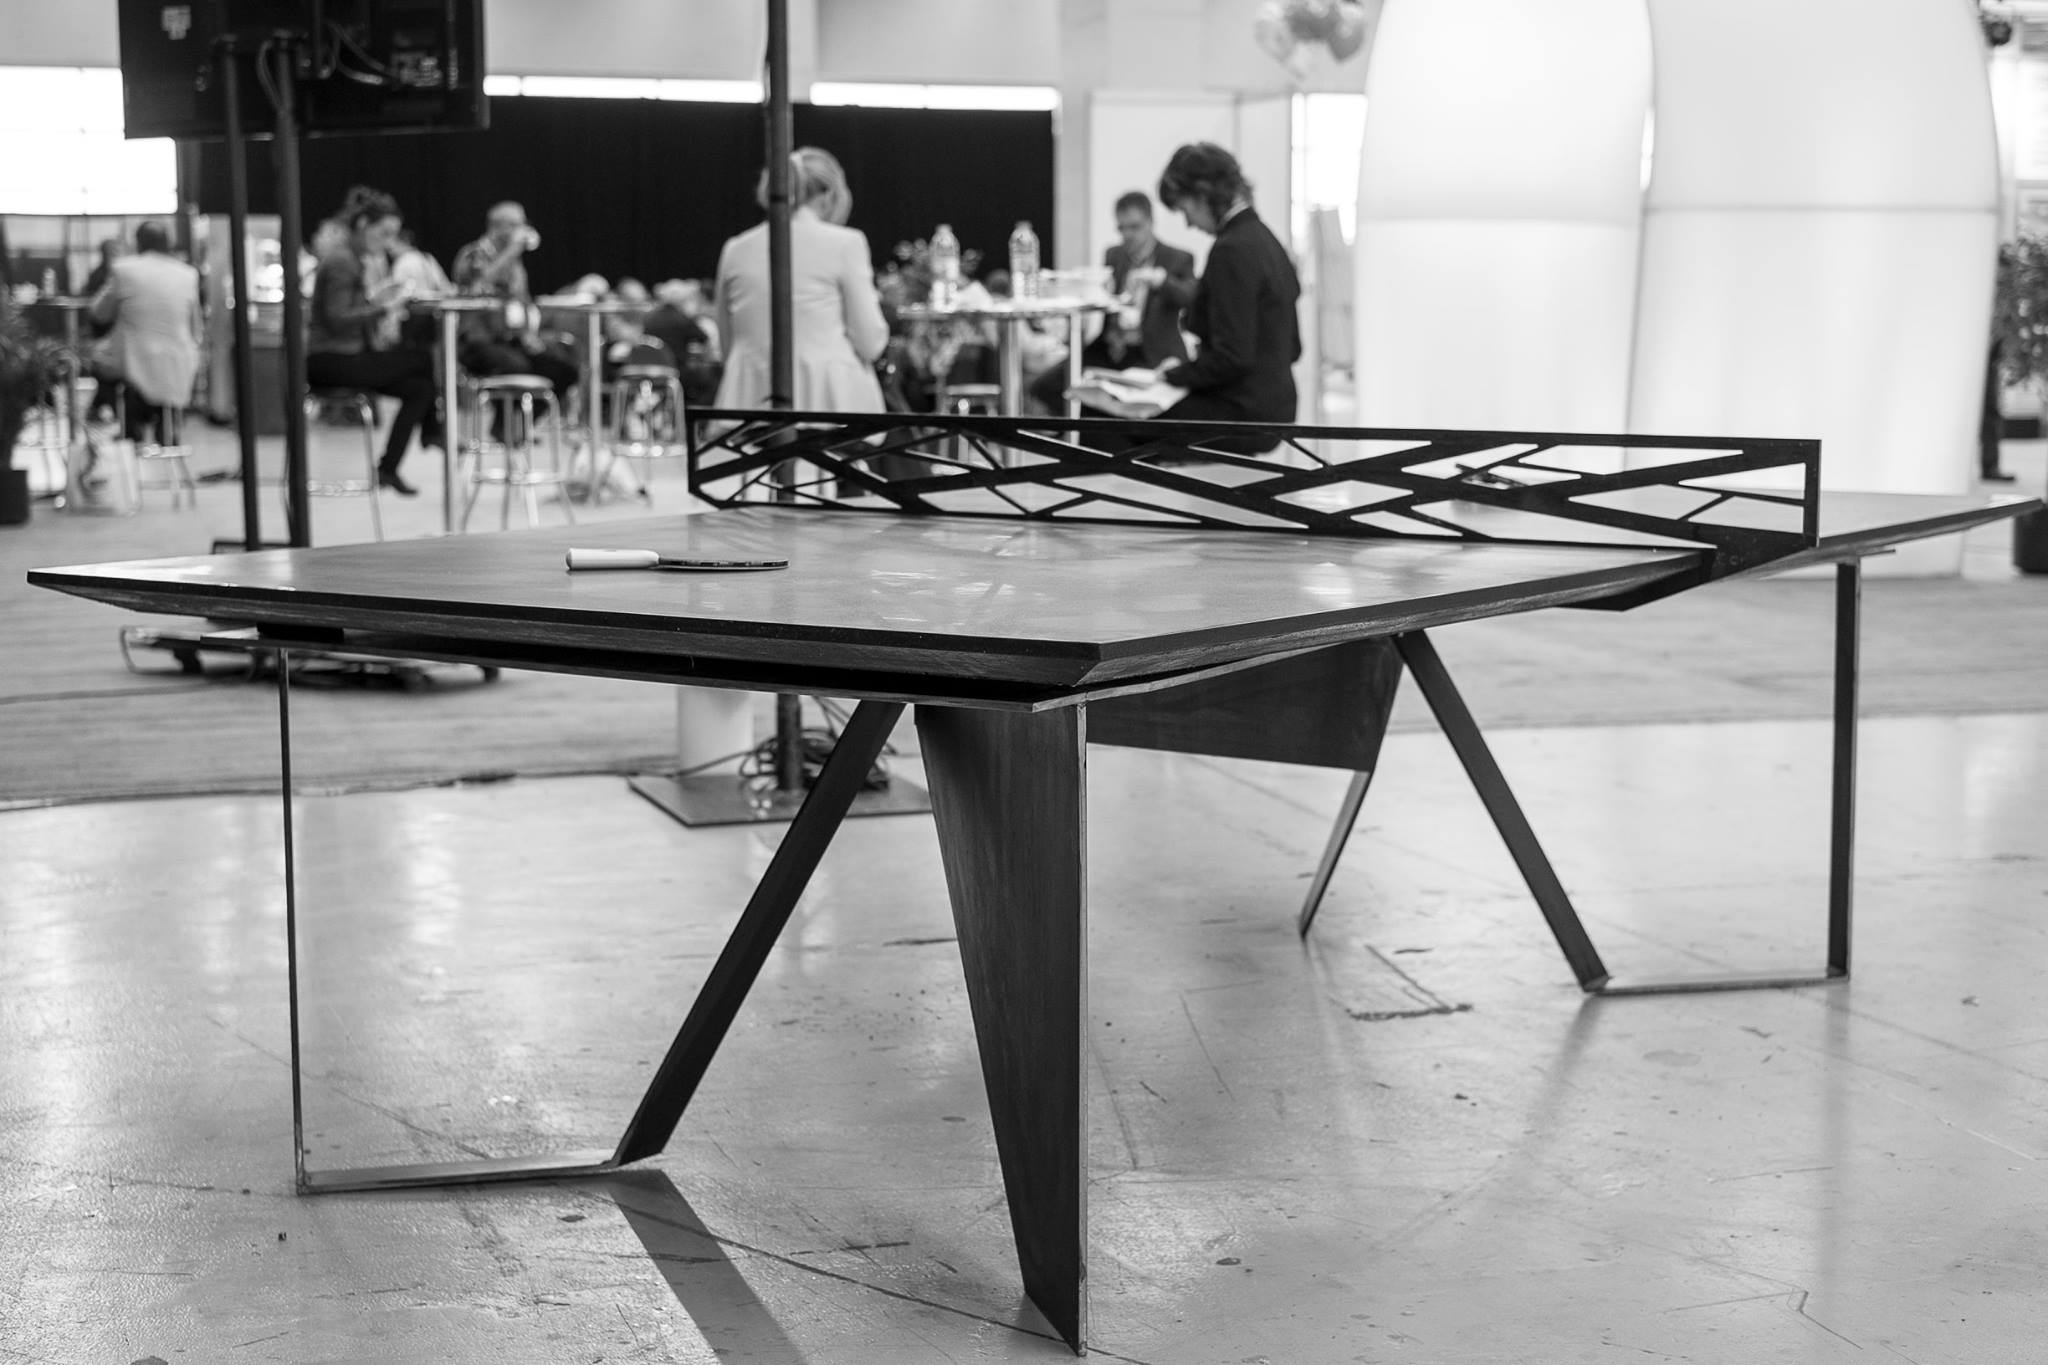 Table ping pong béton - Table béton ping-pong - Tennis de table